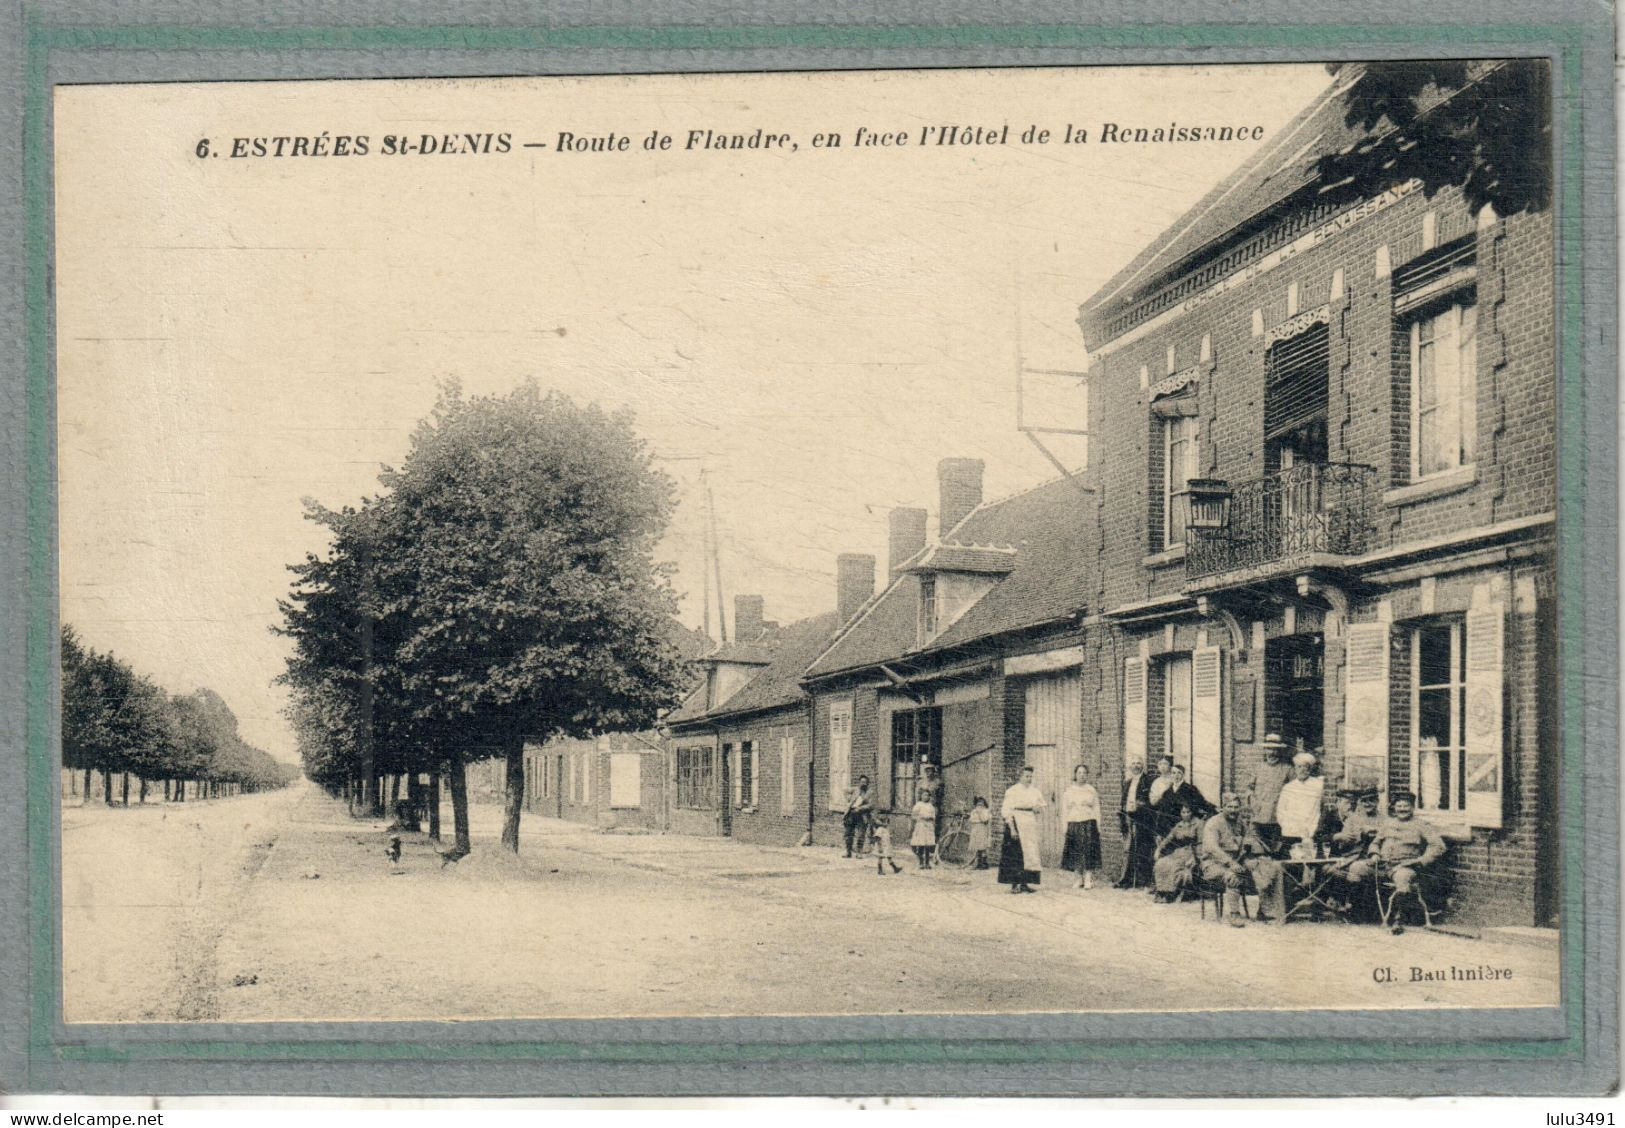 CPA (60) ESTREES-SAINT-DENIS - Aspect De L'Hôtel De La Renaissance Et De La Route De Flandre En 1917 - Estrees Saint Denis